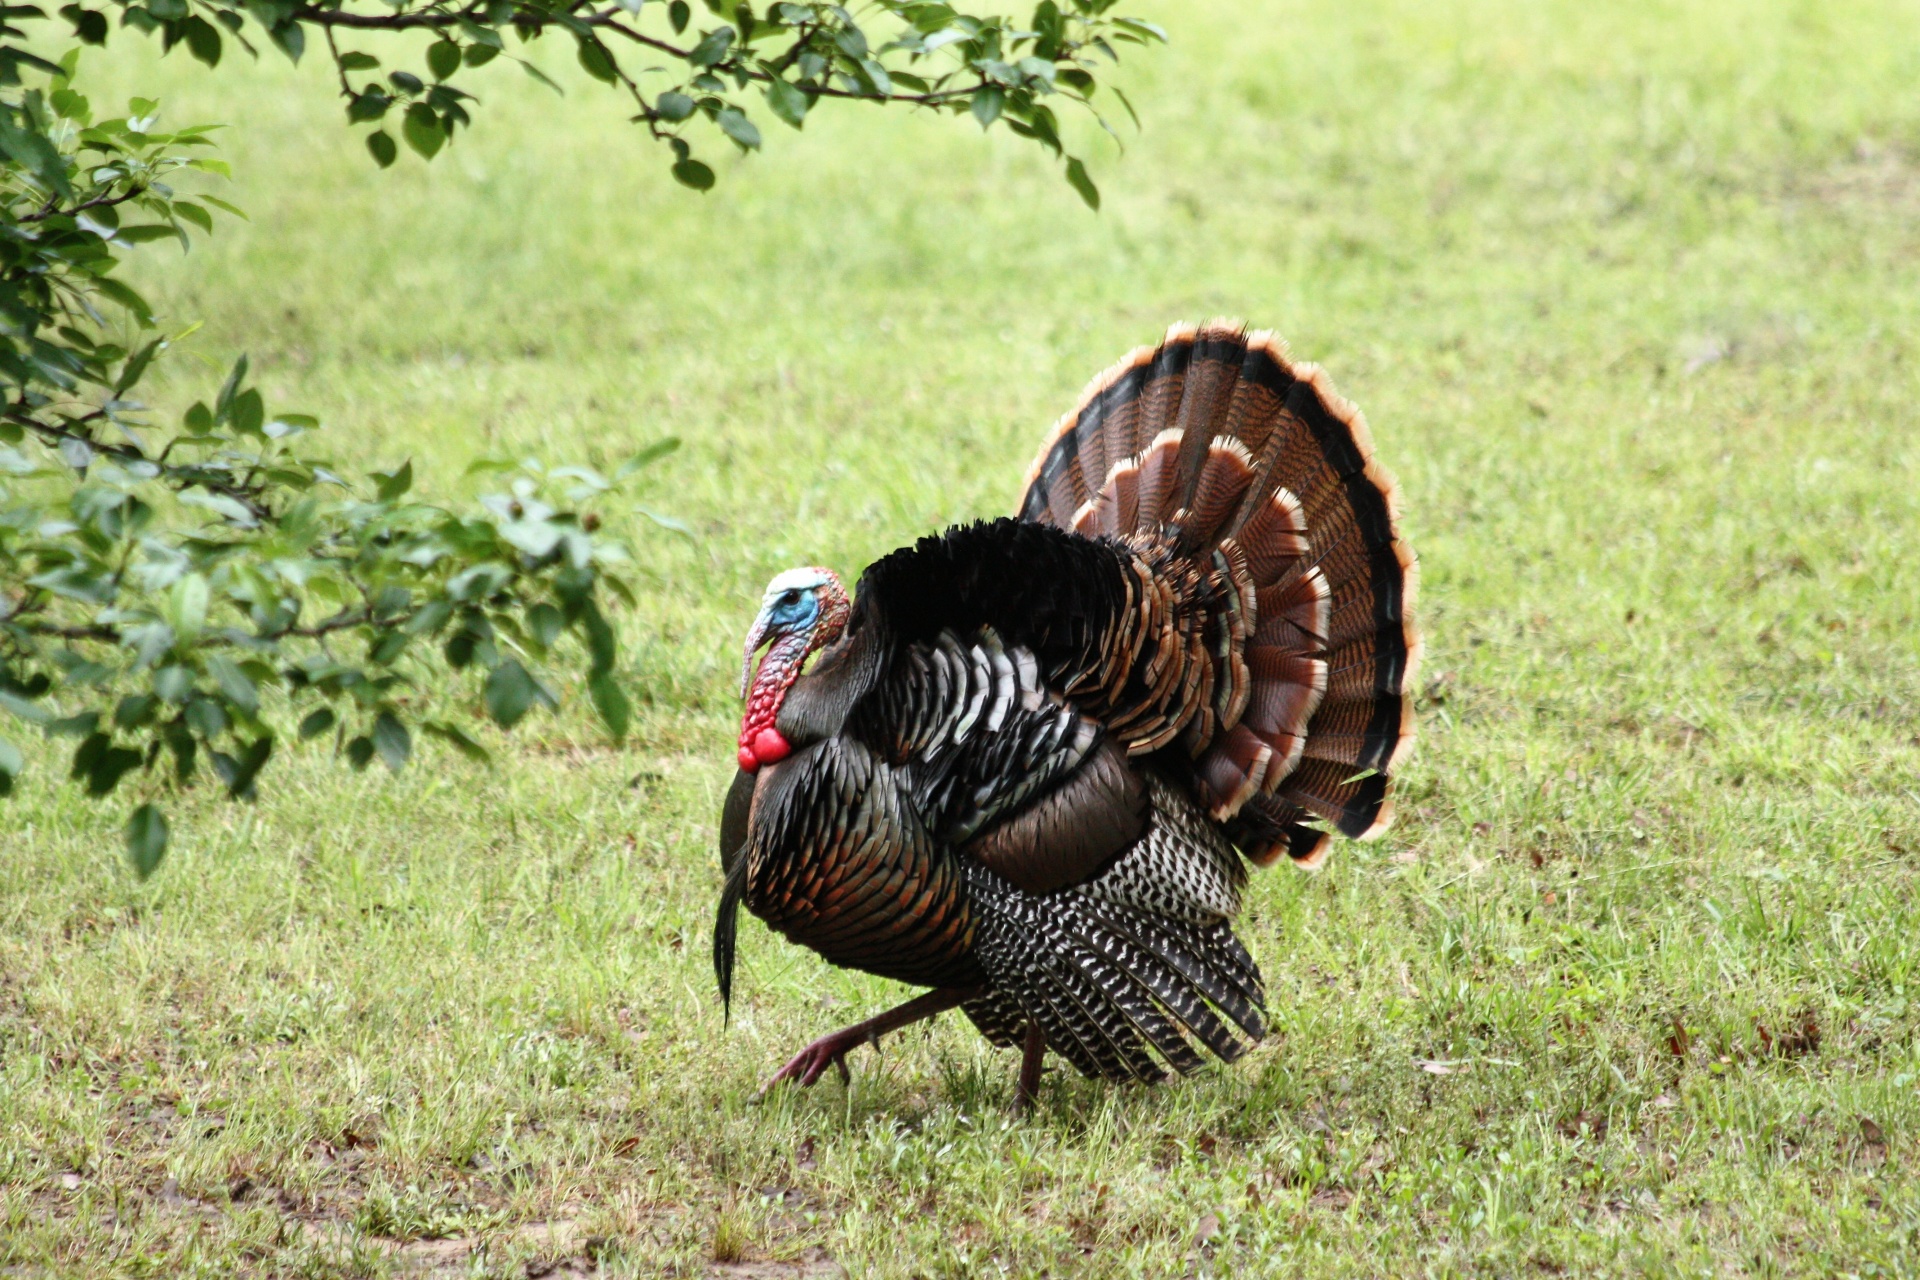 File:Wild Turkey Walking.jpg - Wikipedia